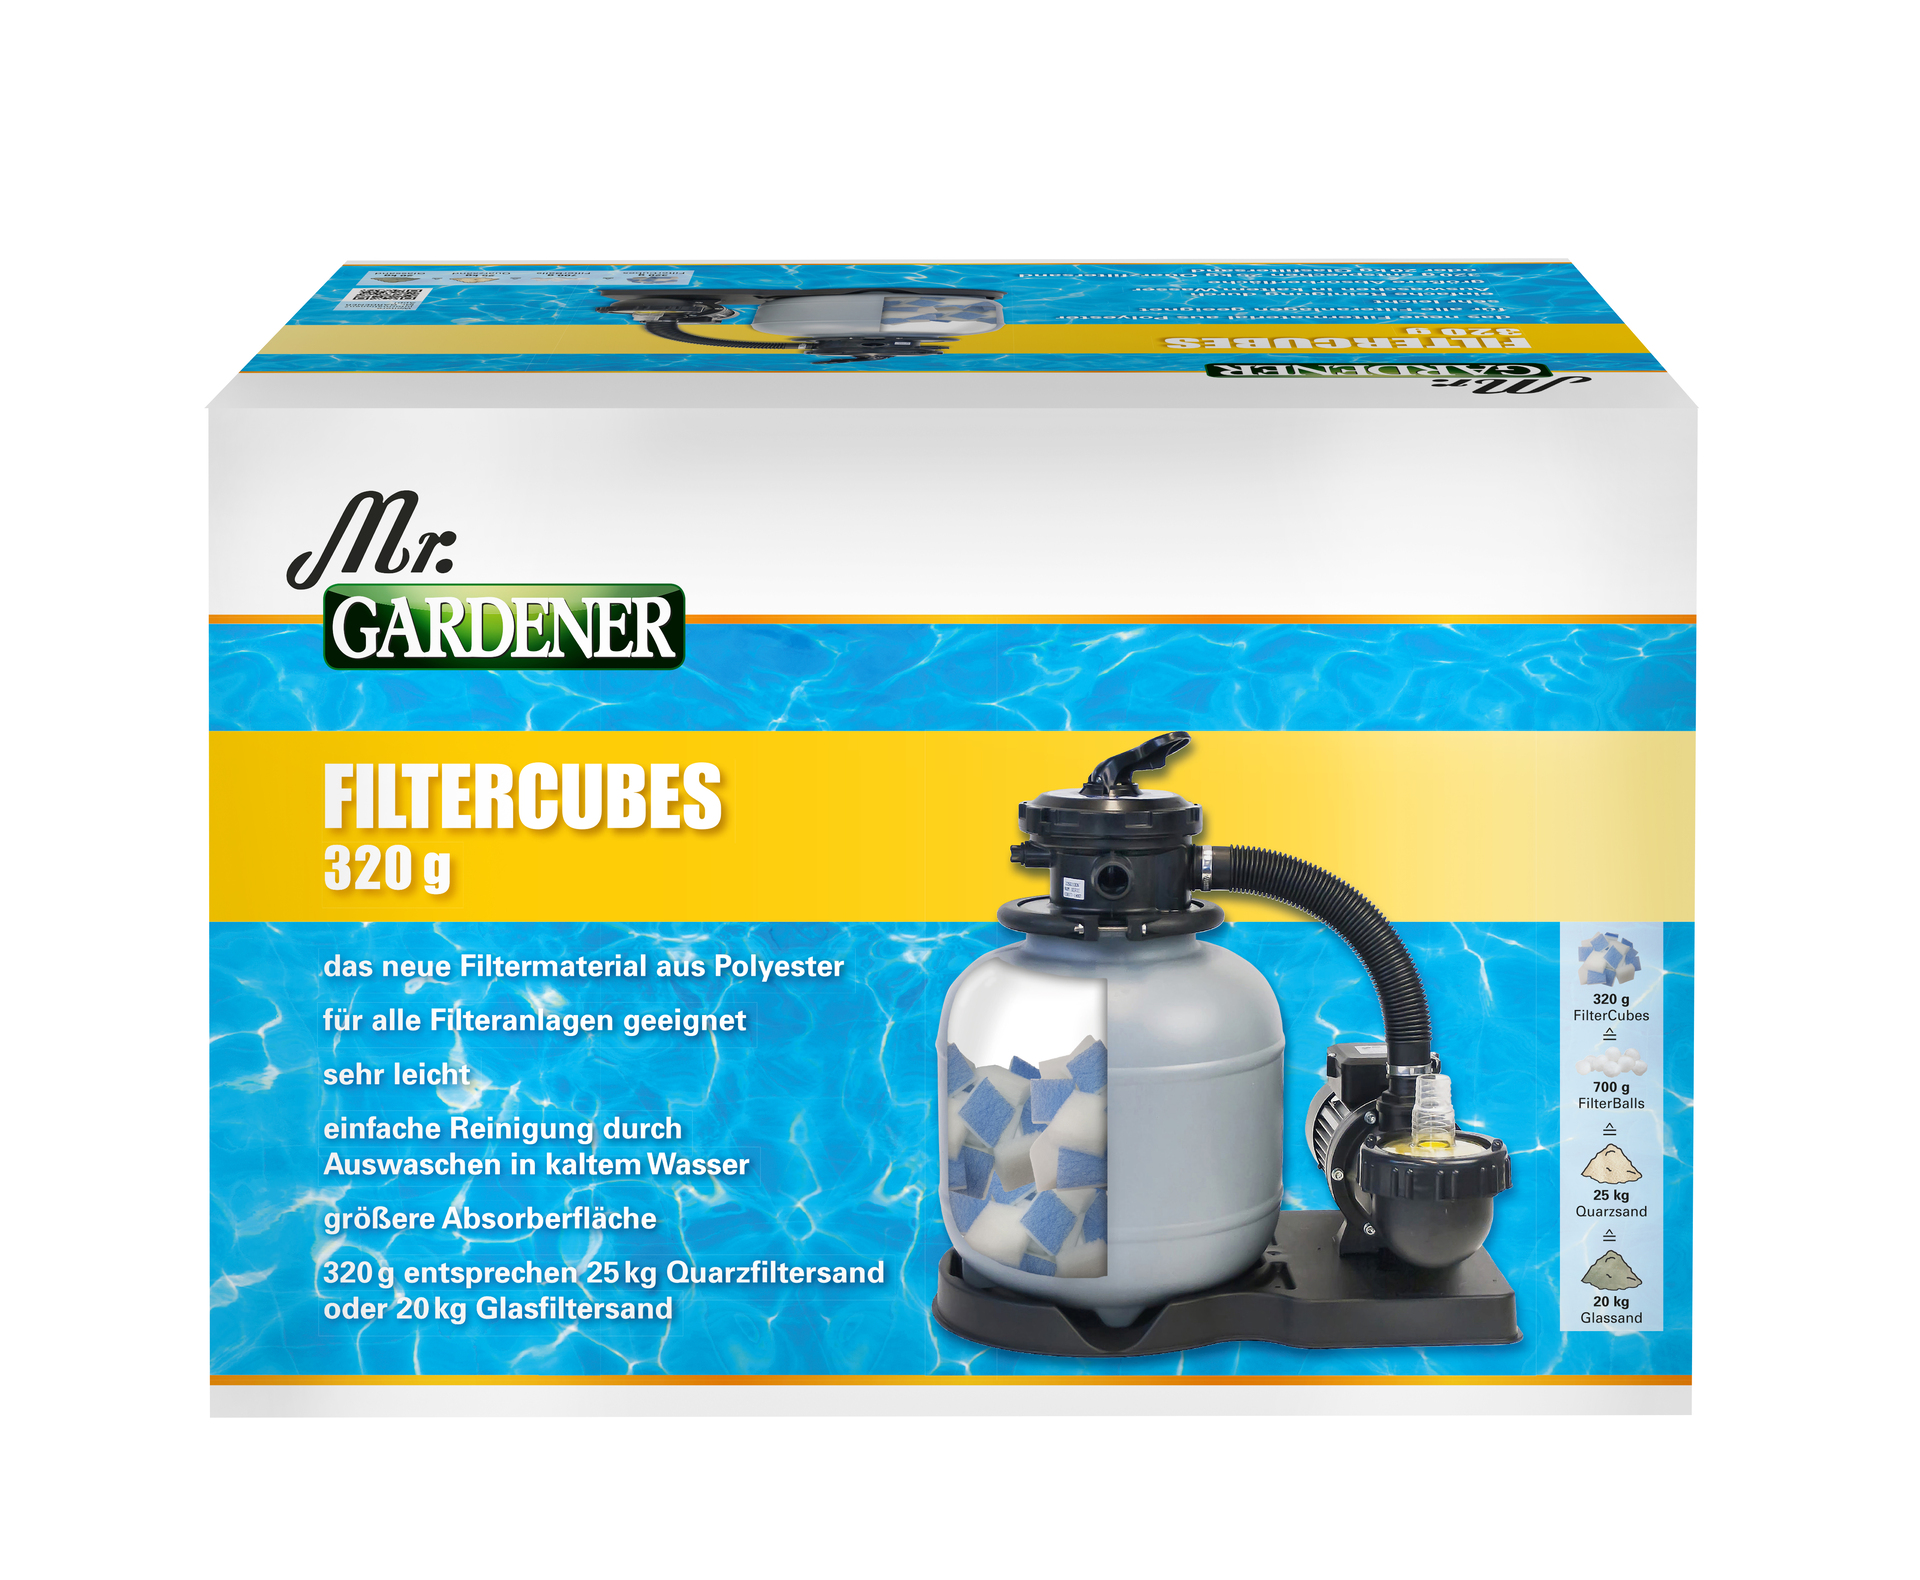 Waterman Filtercubes für Filteranlagen